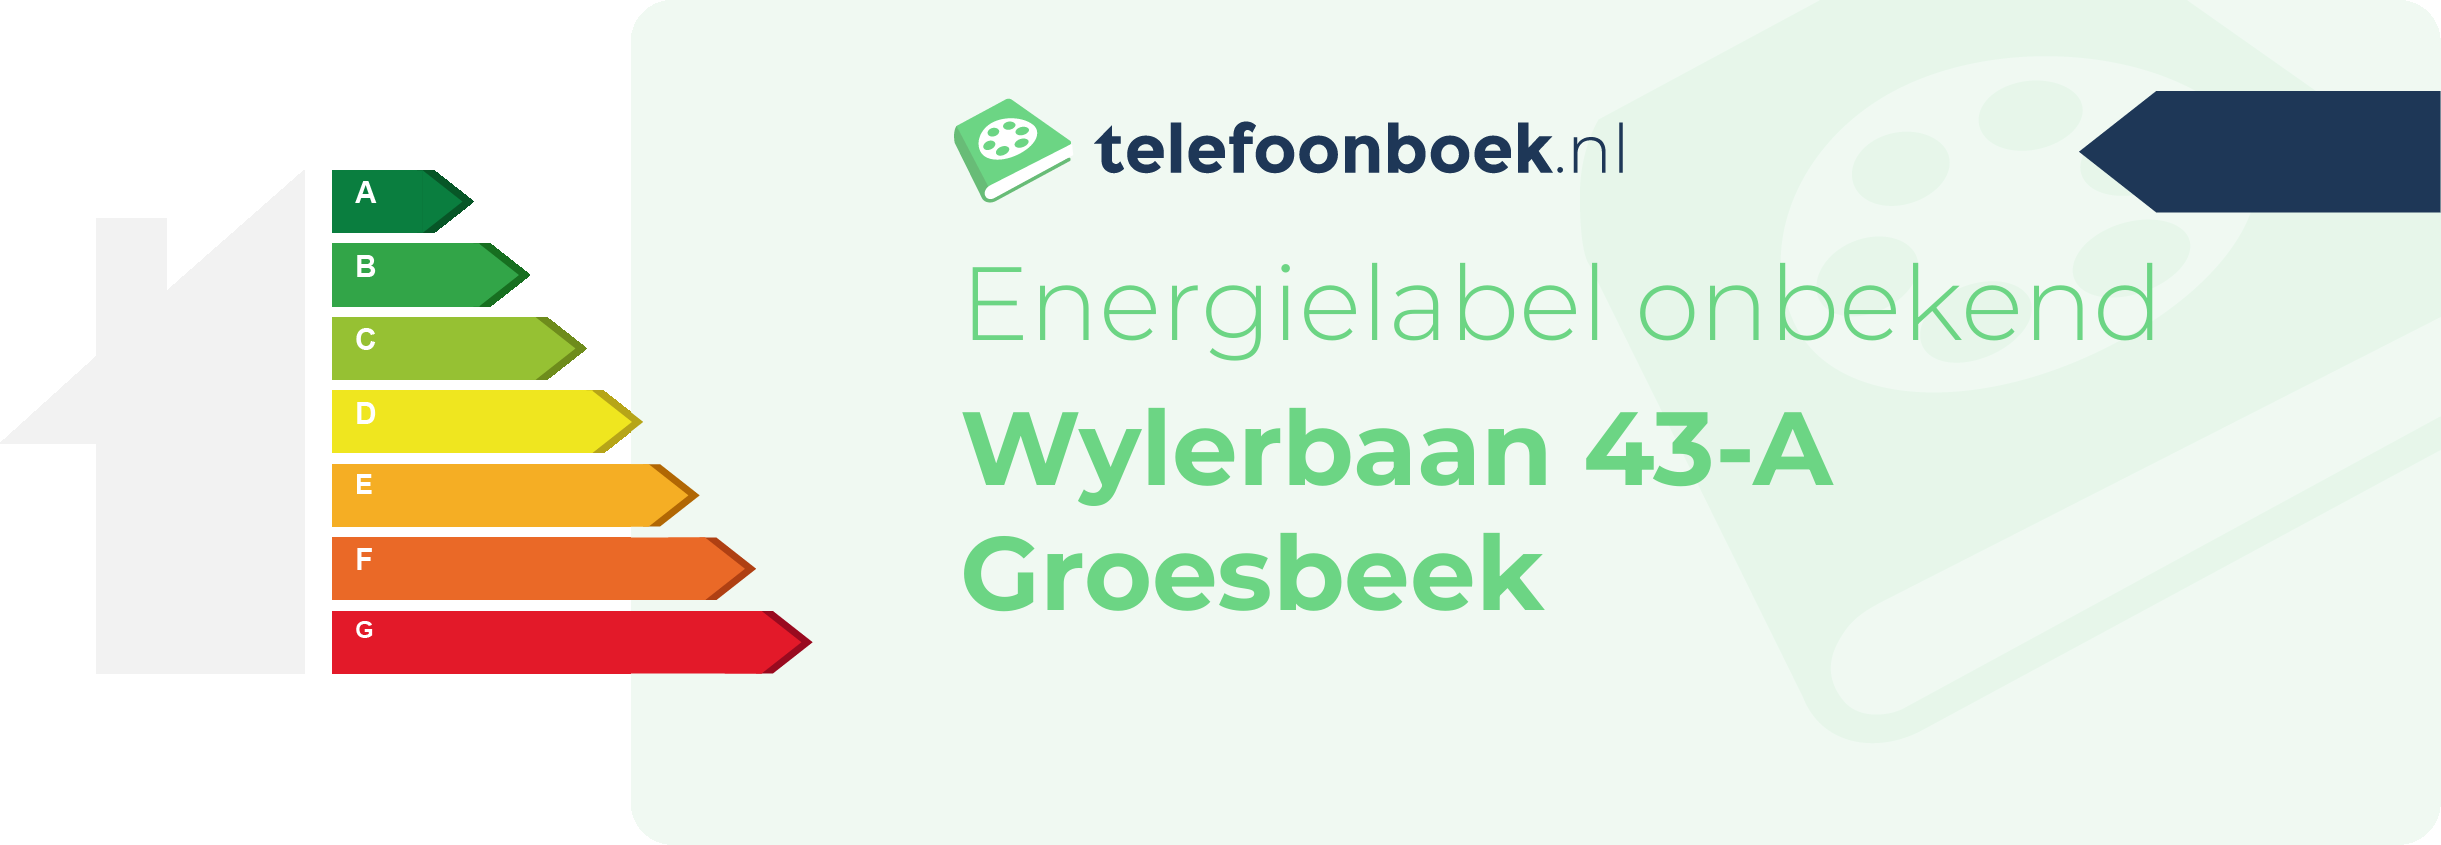 Energielabel Wylerbaan 43-A Groesbeek